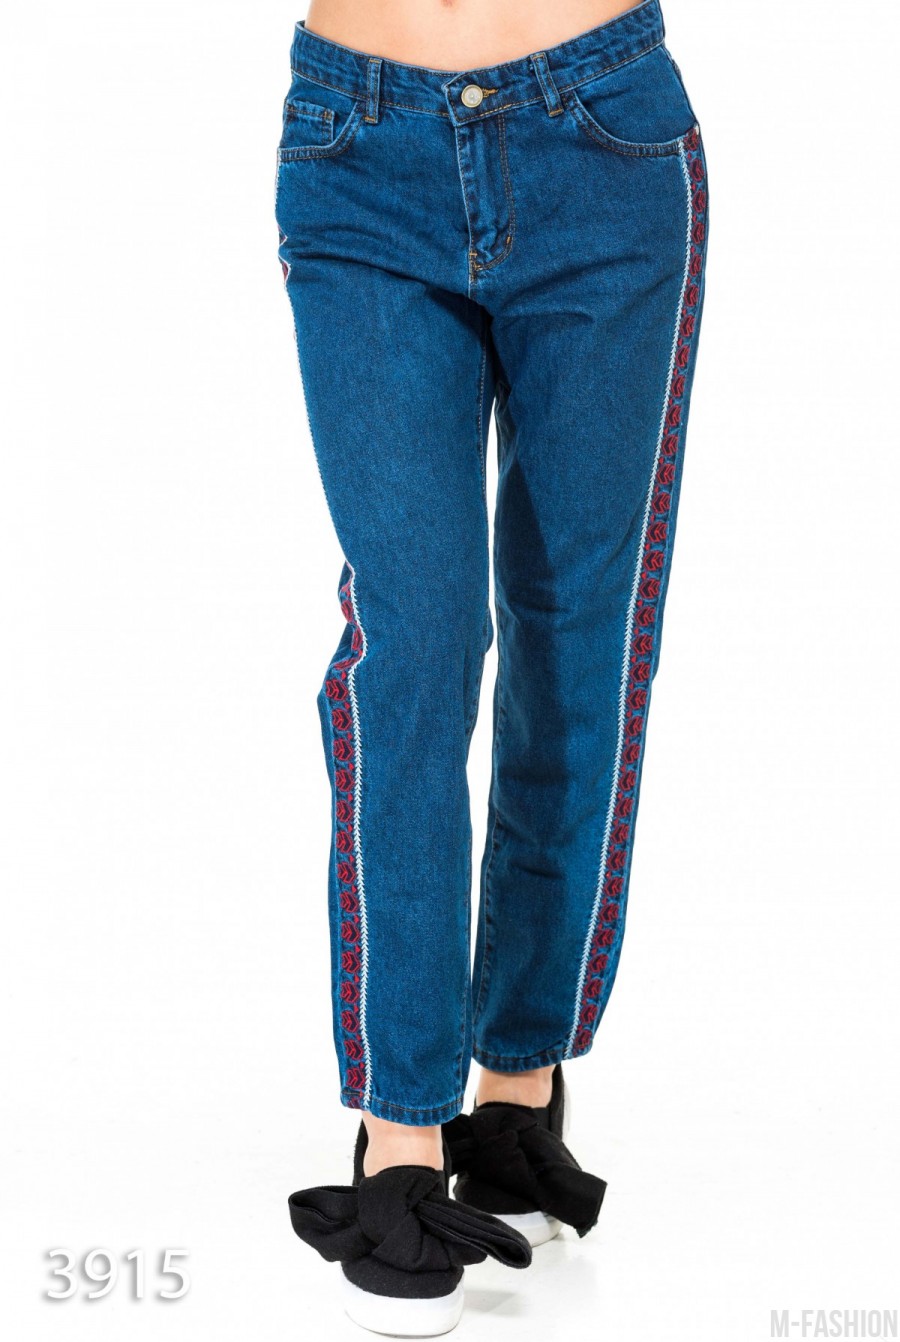 Синие джинсы-трубы с вышитым орнаментом по бокам - Фото 1